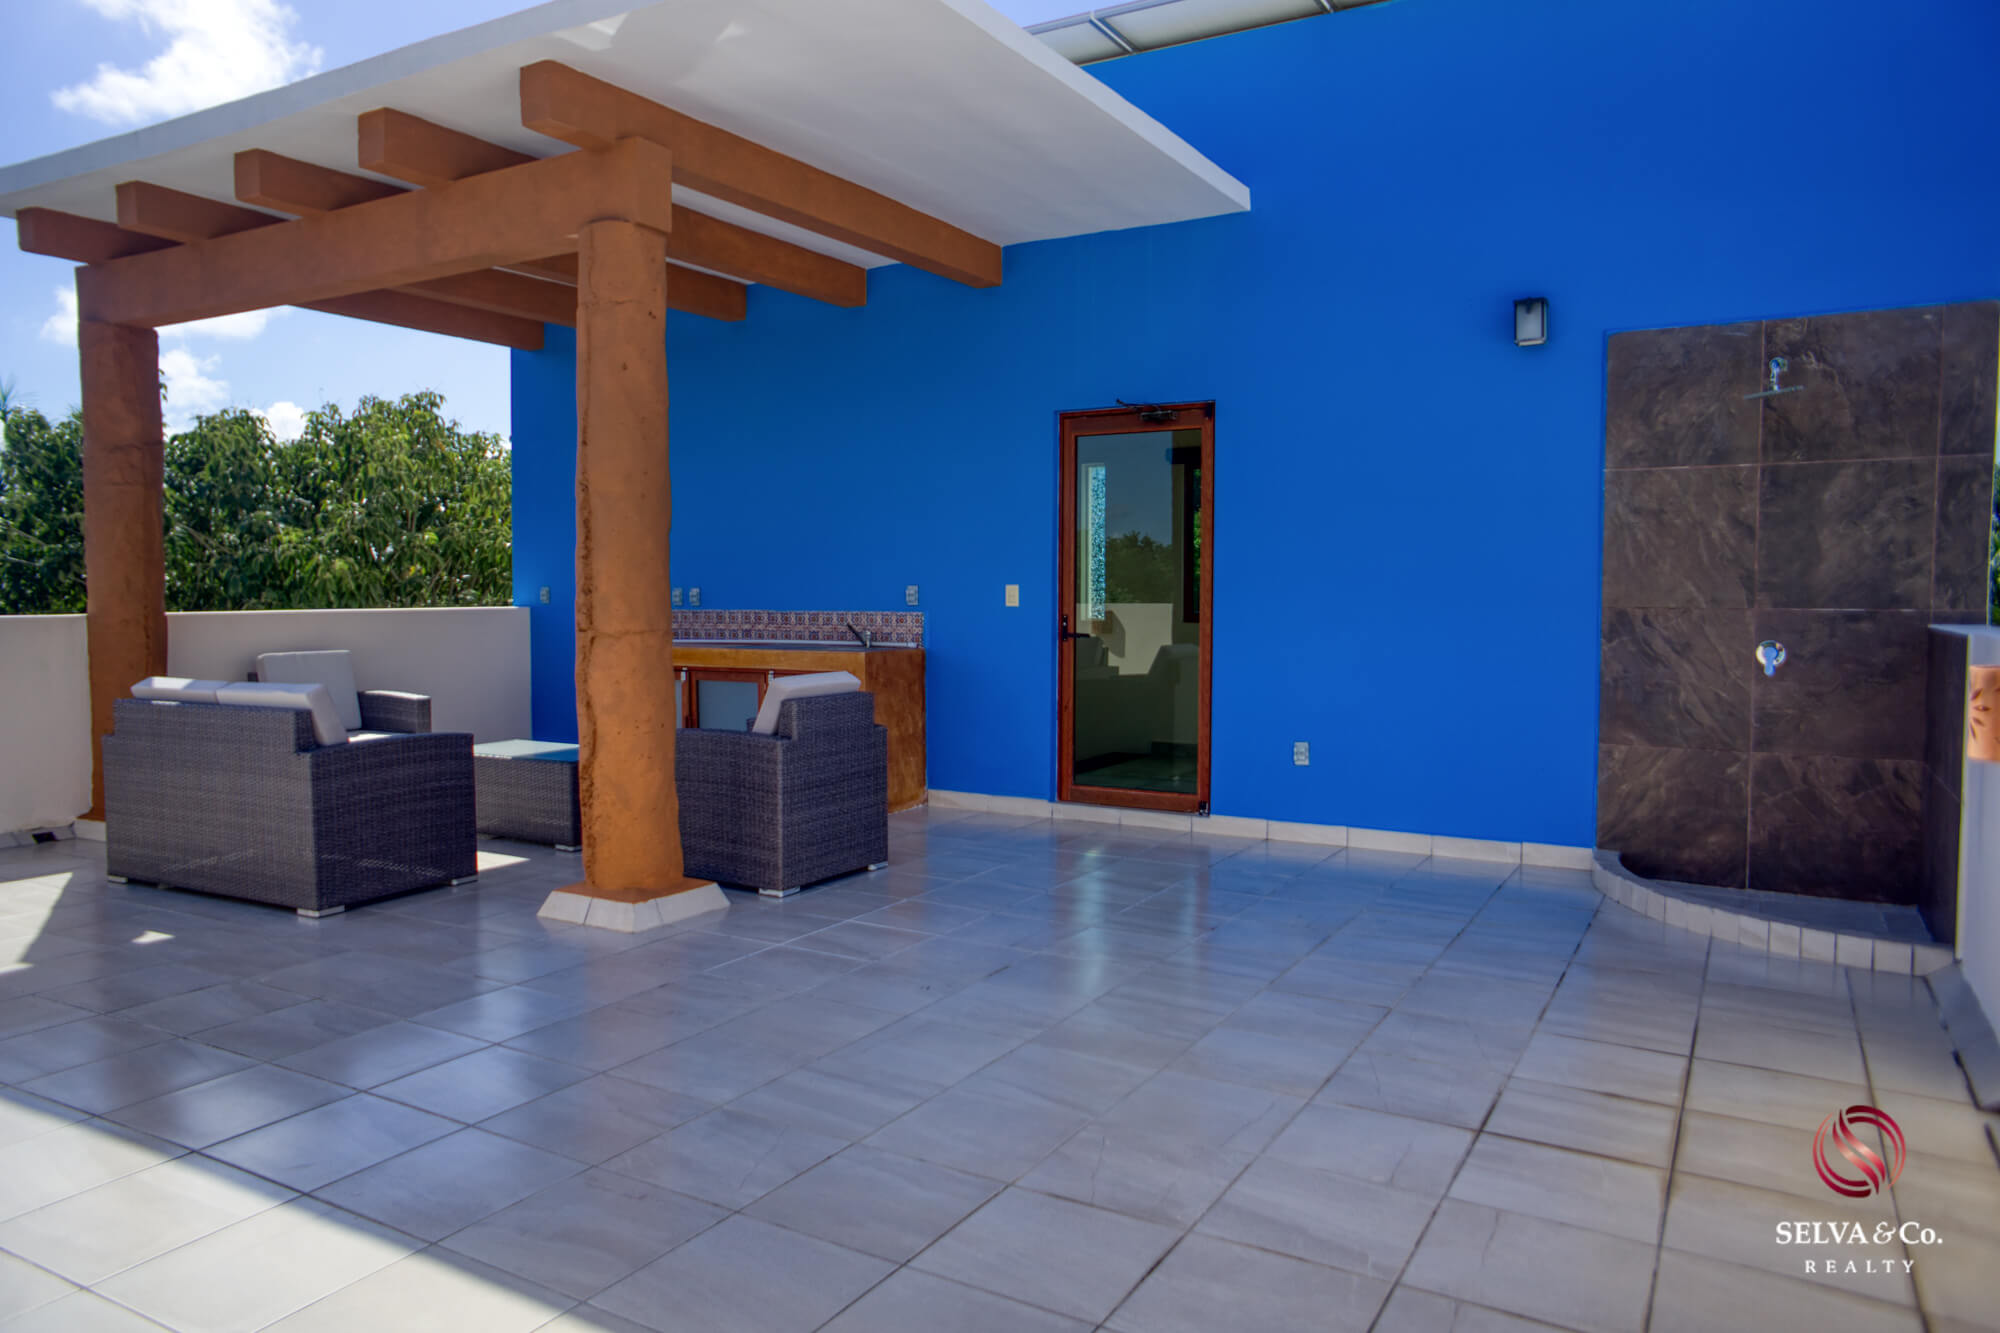 Casa con alberca privada, Jardin y cocina equipada, residencial de lujo con amenidades para toda la familia, en venta, Valenia, Playa del Ca